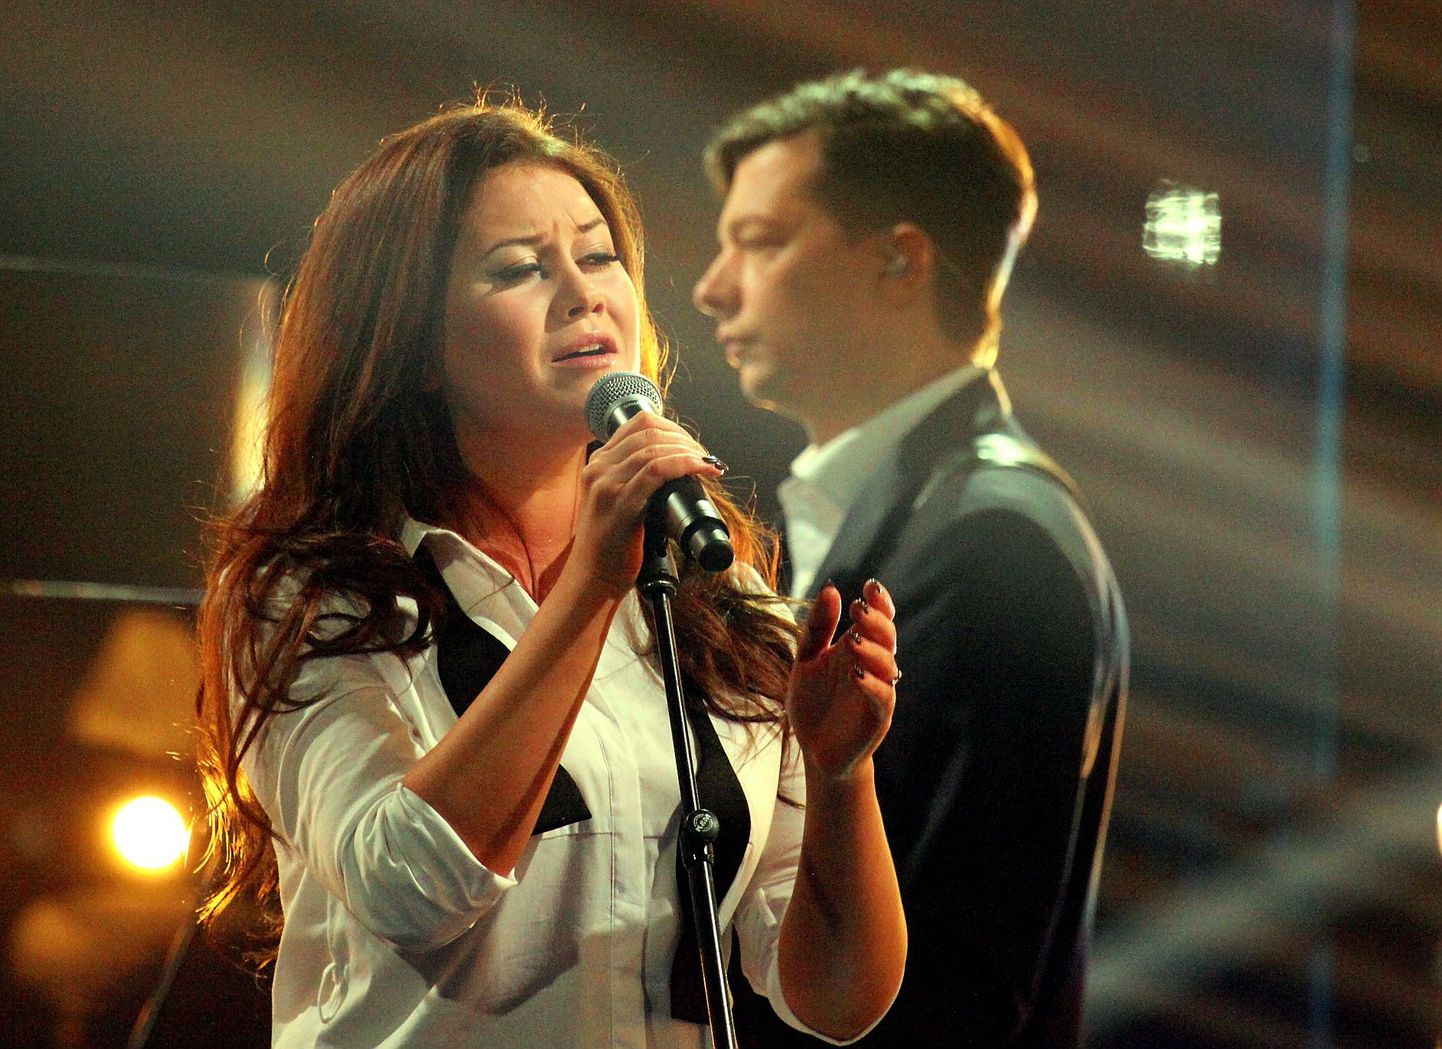 Pühapäeval, 1. veebruaril toimusid Telemajas Eesti Laul 2015 2. poolfinaali salvestused. Elina Born ja Stig Rästa